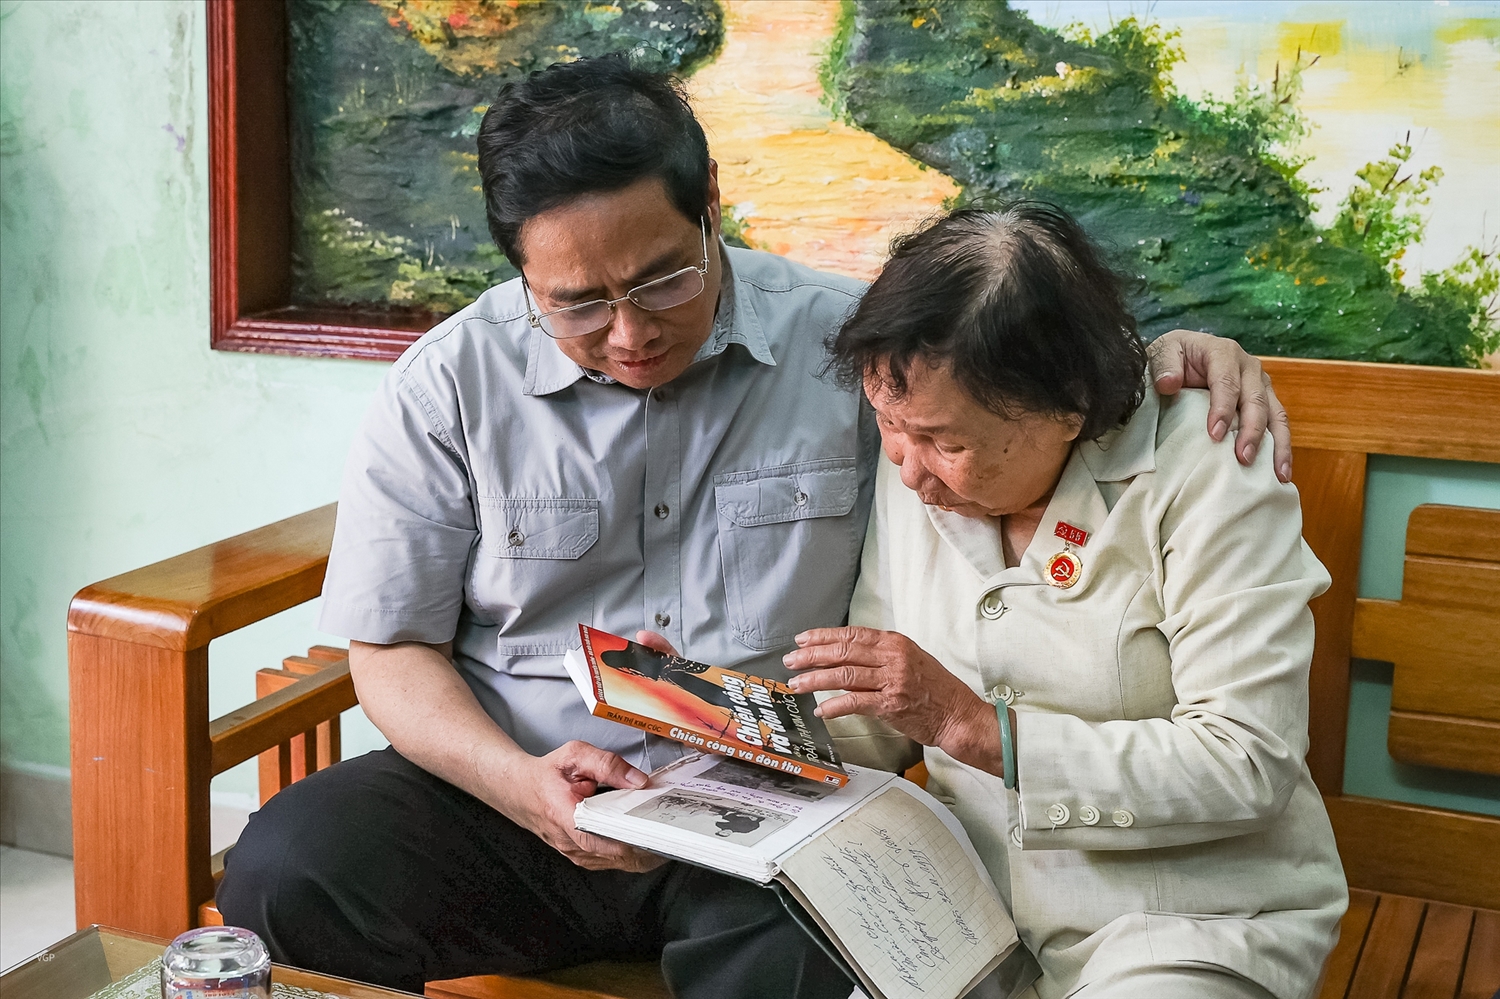 Thương binh Trần Thị Kim Cúc tặng Thủ tướng cuốn hồi ký "Chiến công và Đòn thù" của bà. Ảnh VGP/Nhật Bắc